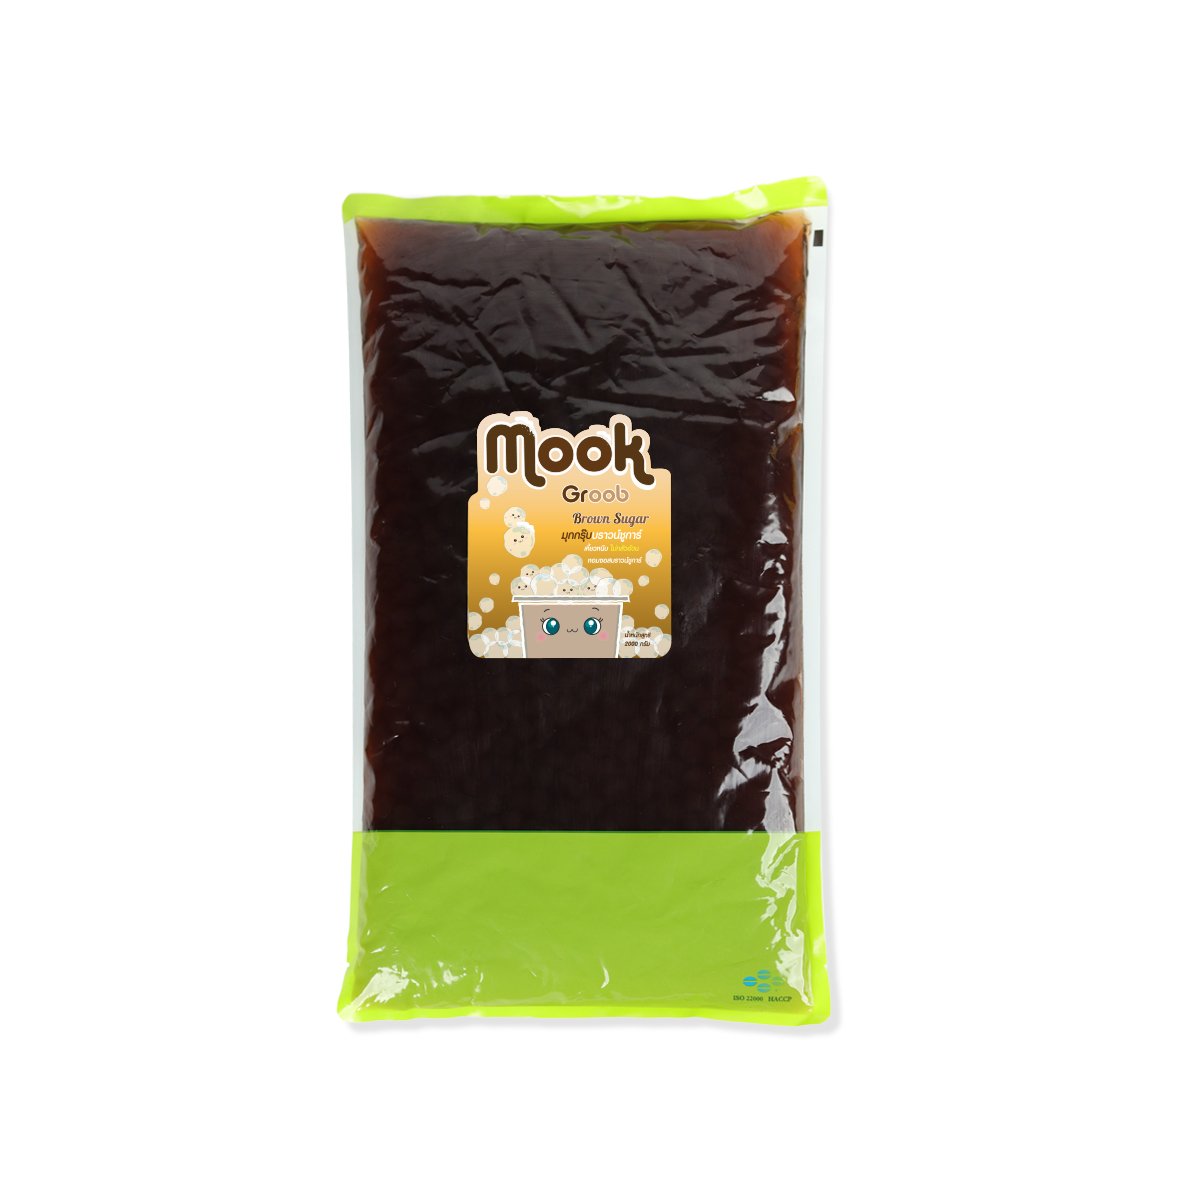 Mook Groob Brown Sugar 2 kg.